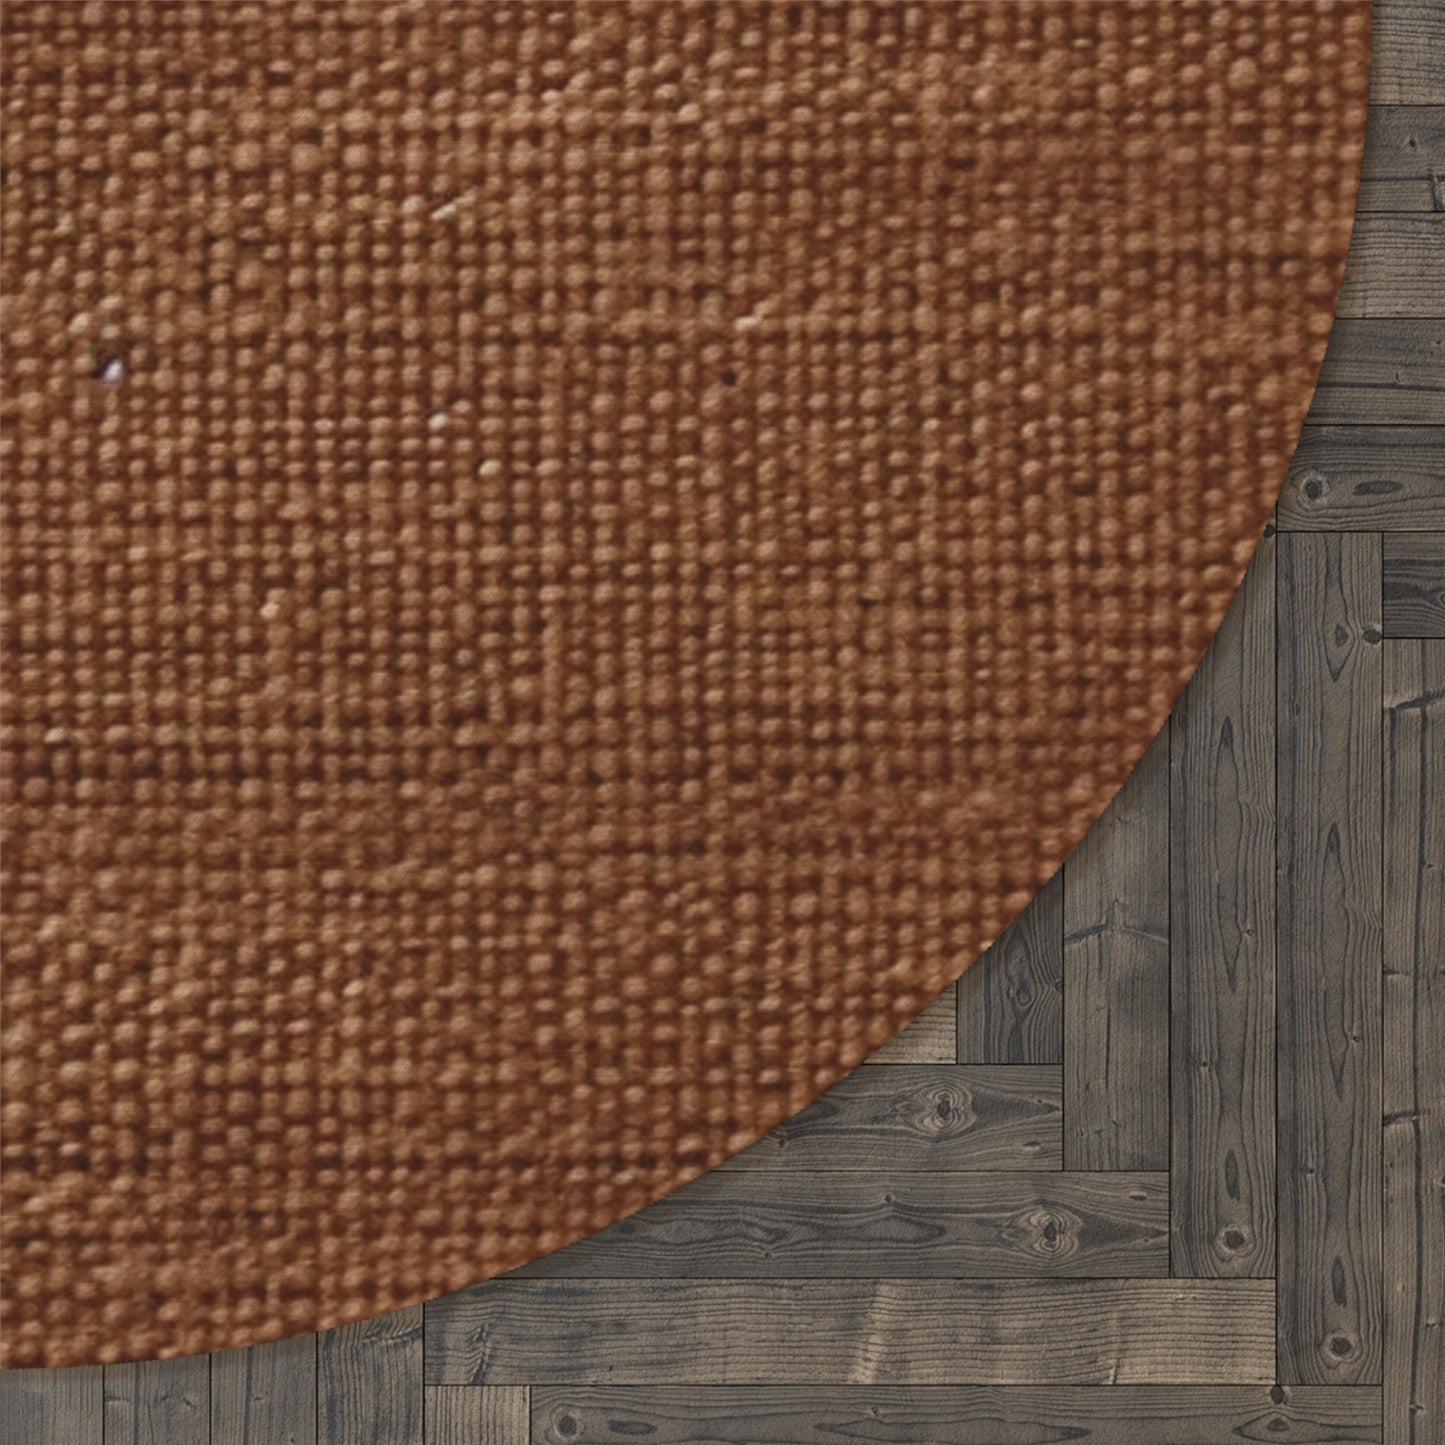 Luxe Dark Brown: Denim-Inspired, Distinctively Textured Fabric - Round Rug